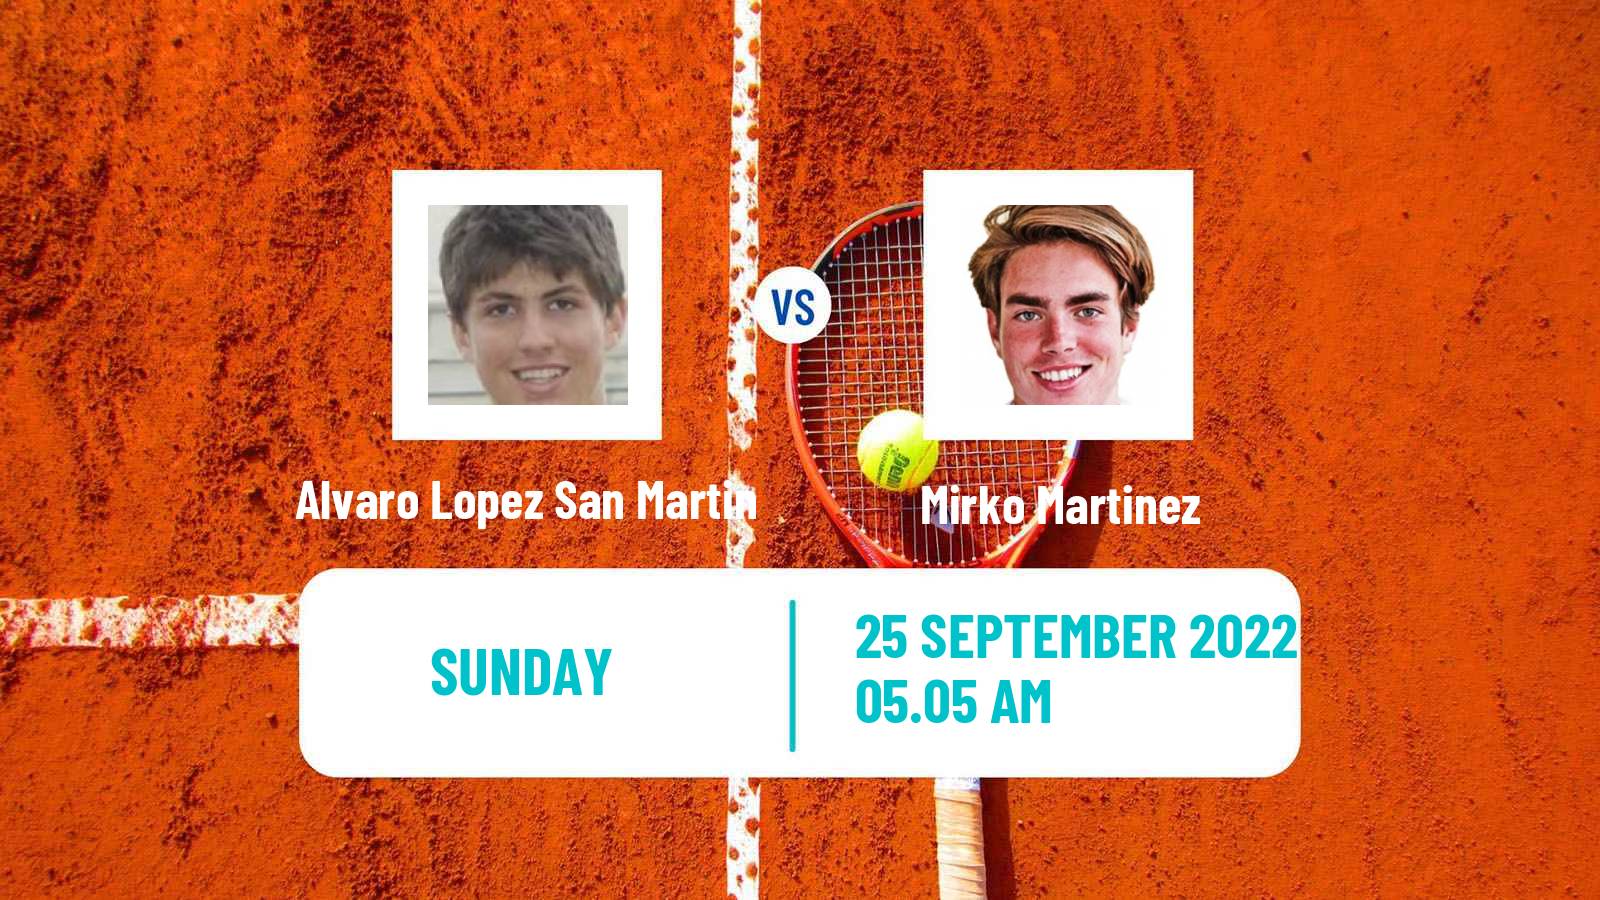 Tennis ITF Tournaments Alvaro Lopez San Martin - Mirko Martinez